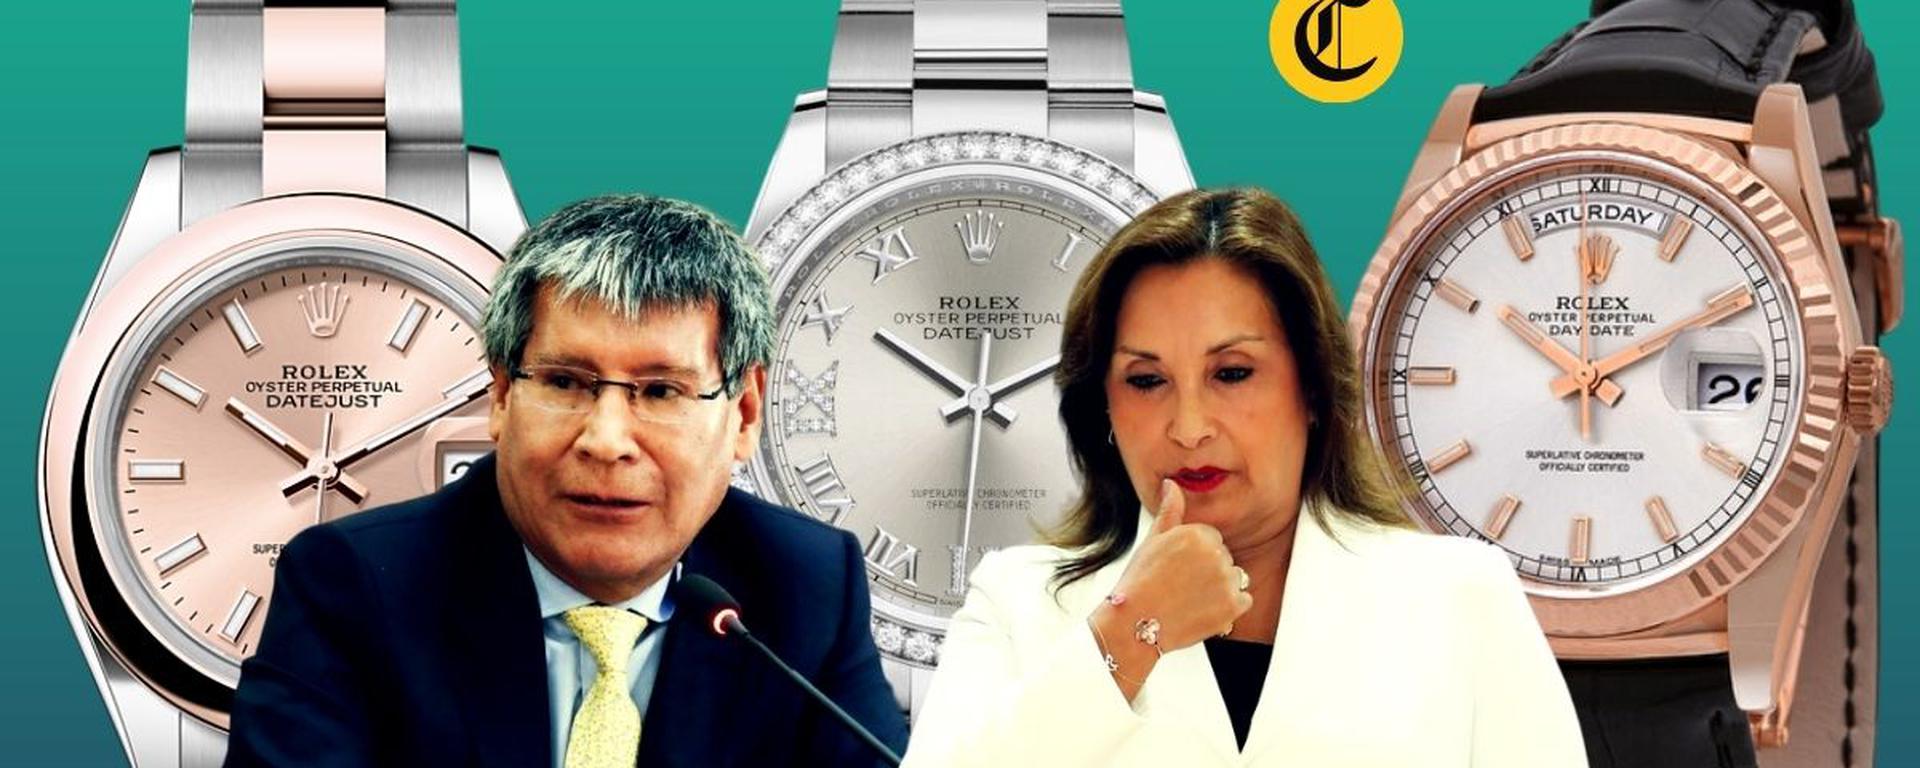 Dina Boluarte: Fiscalía advierte que hay “serios indicios” de que Rolex y joyas “fueron entregados como beneficio”